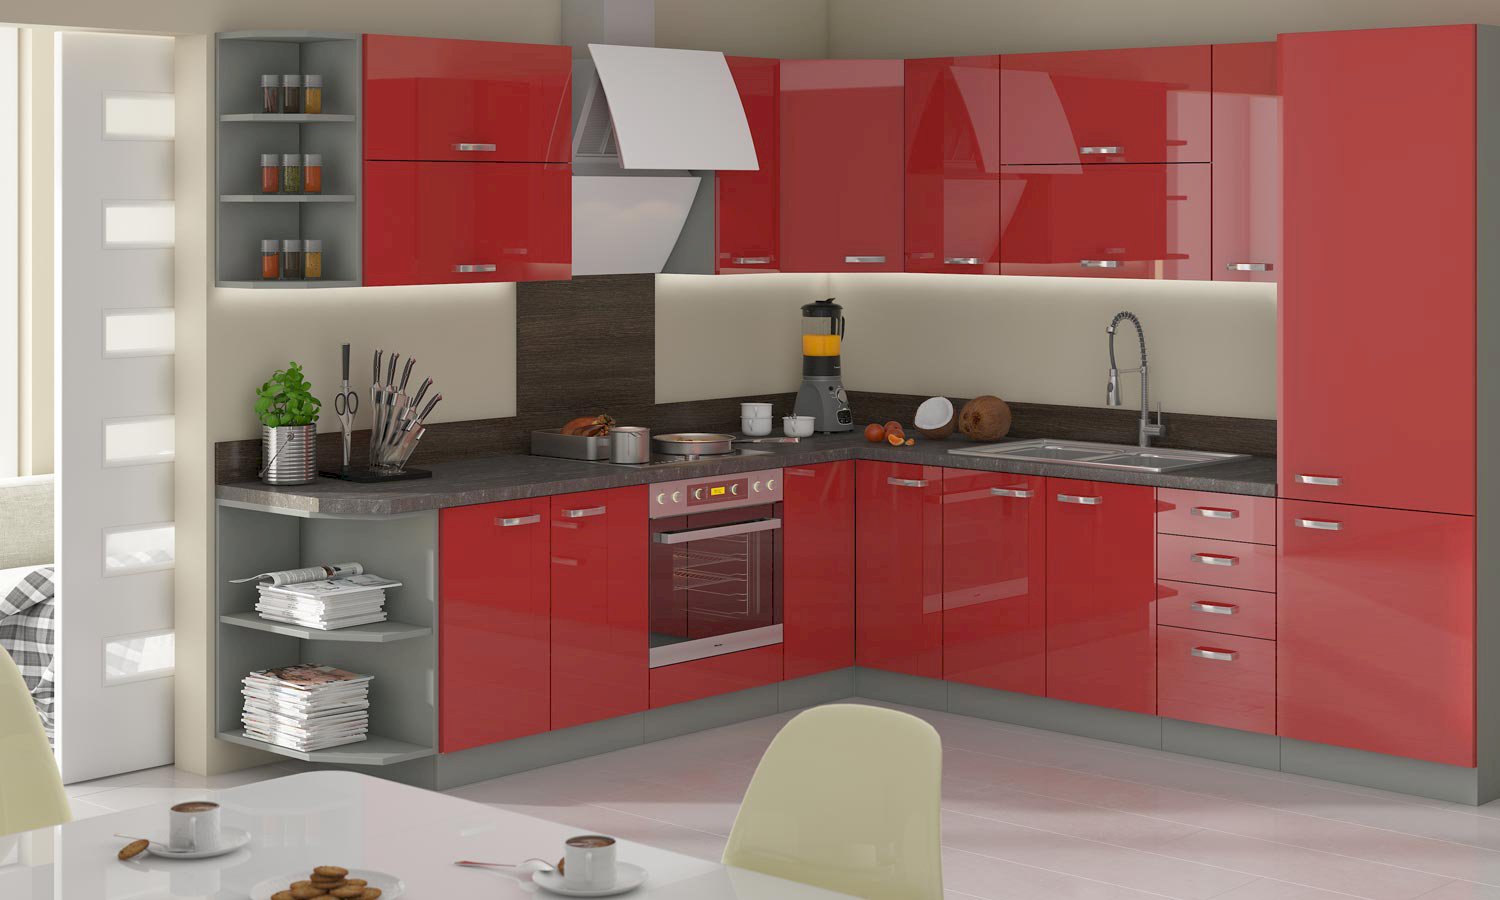 Kuchnia czerwona – oryginalne meble, które ożywią kuchenne wnętrze